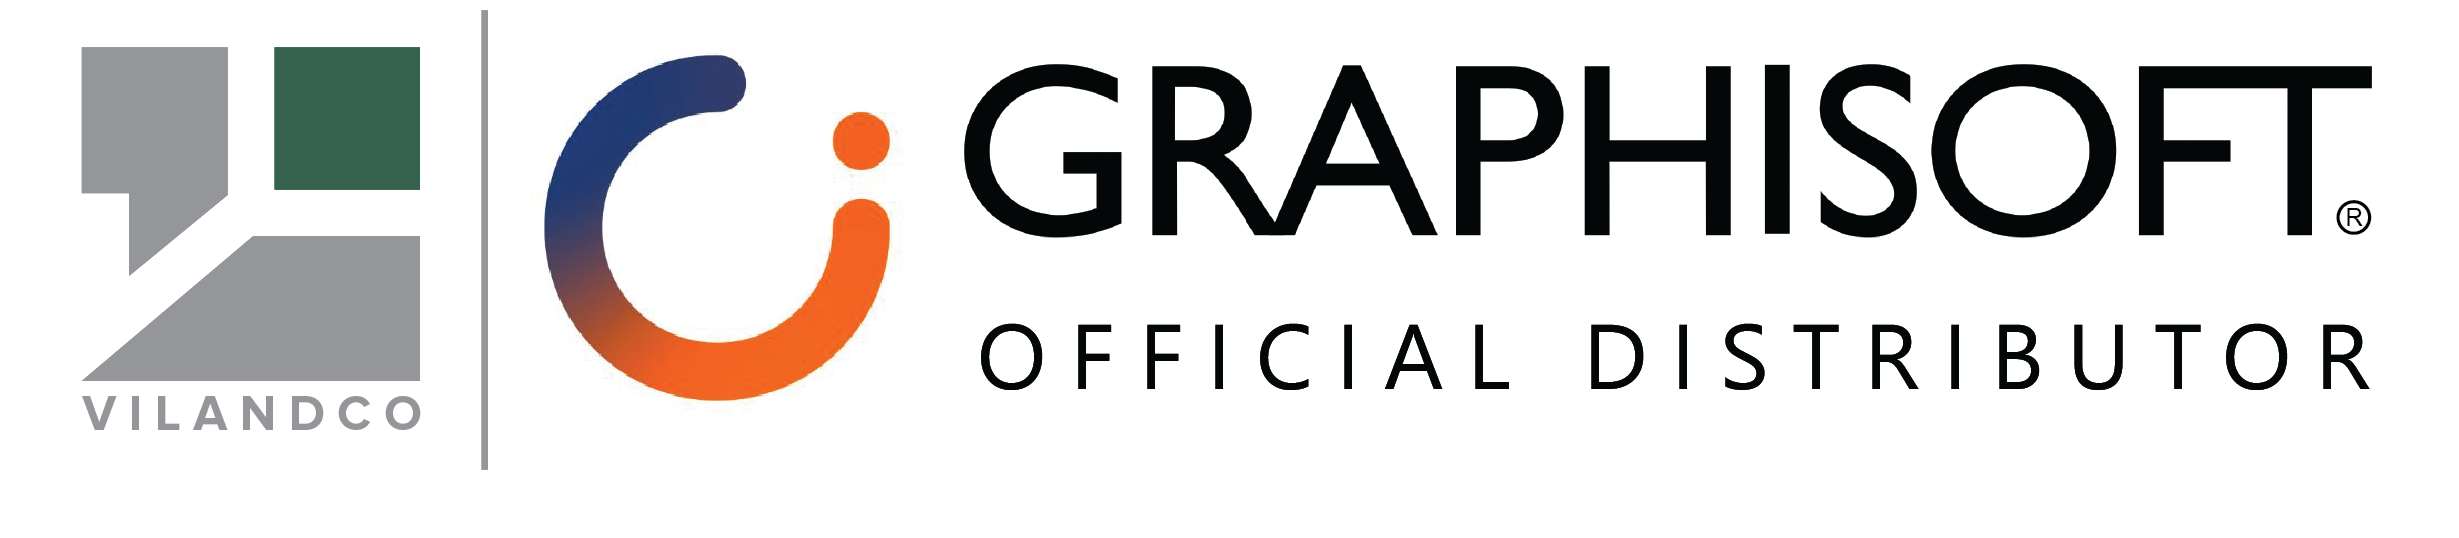 Graphisoft Vietnam – Vilandco official distributor